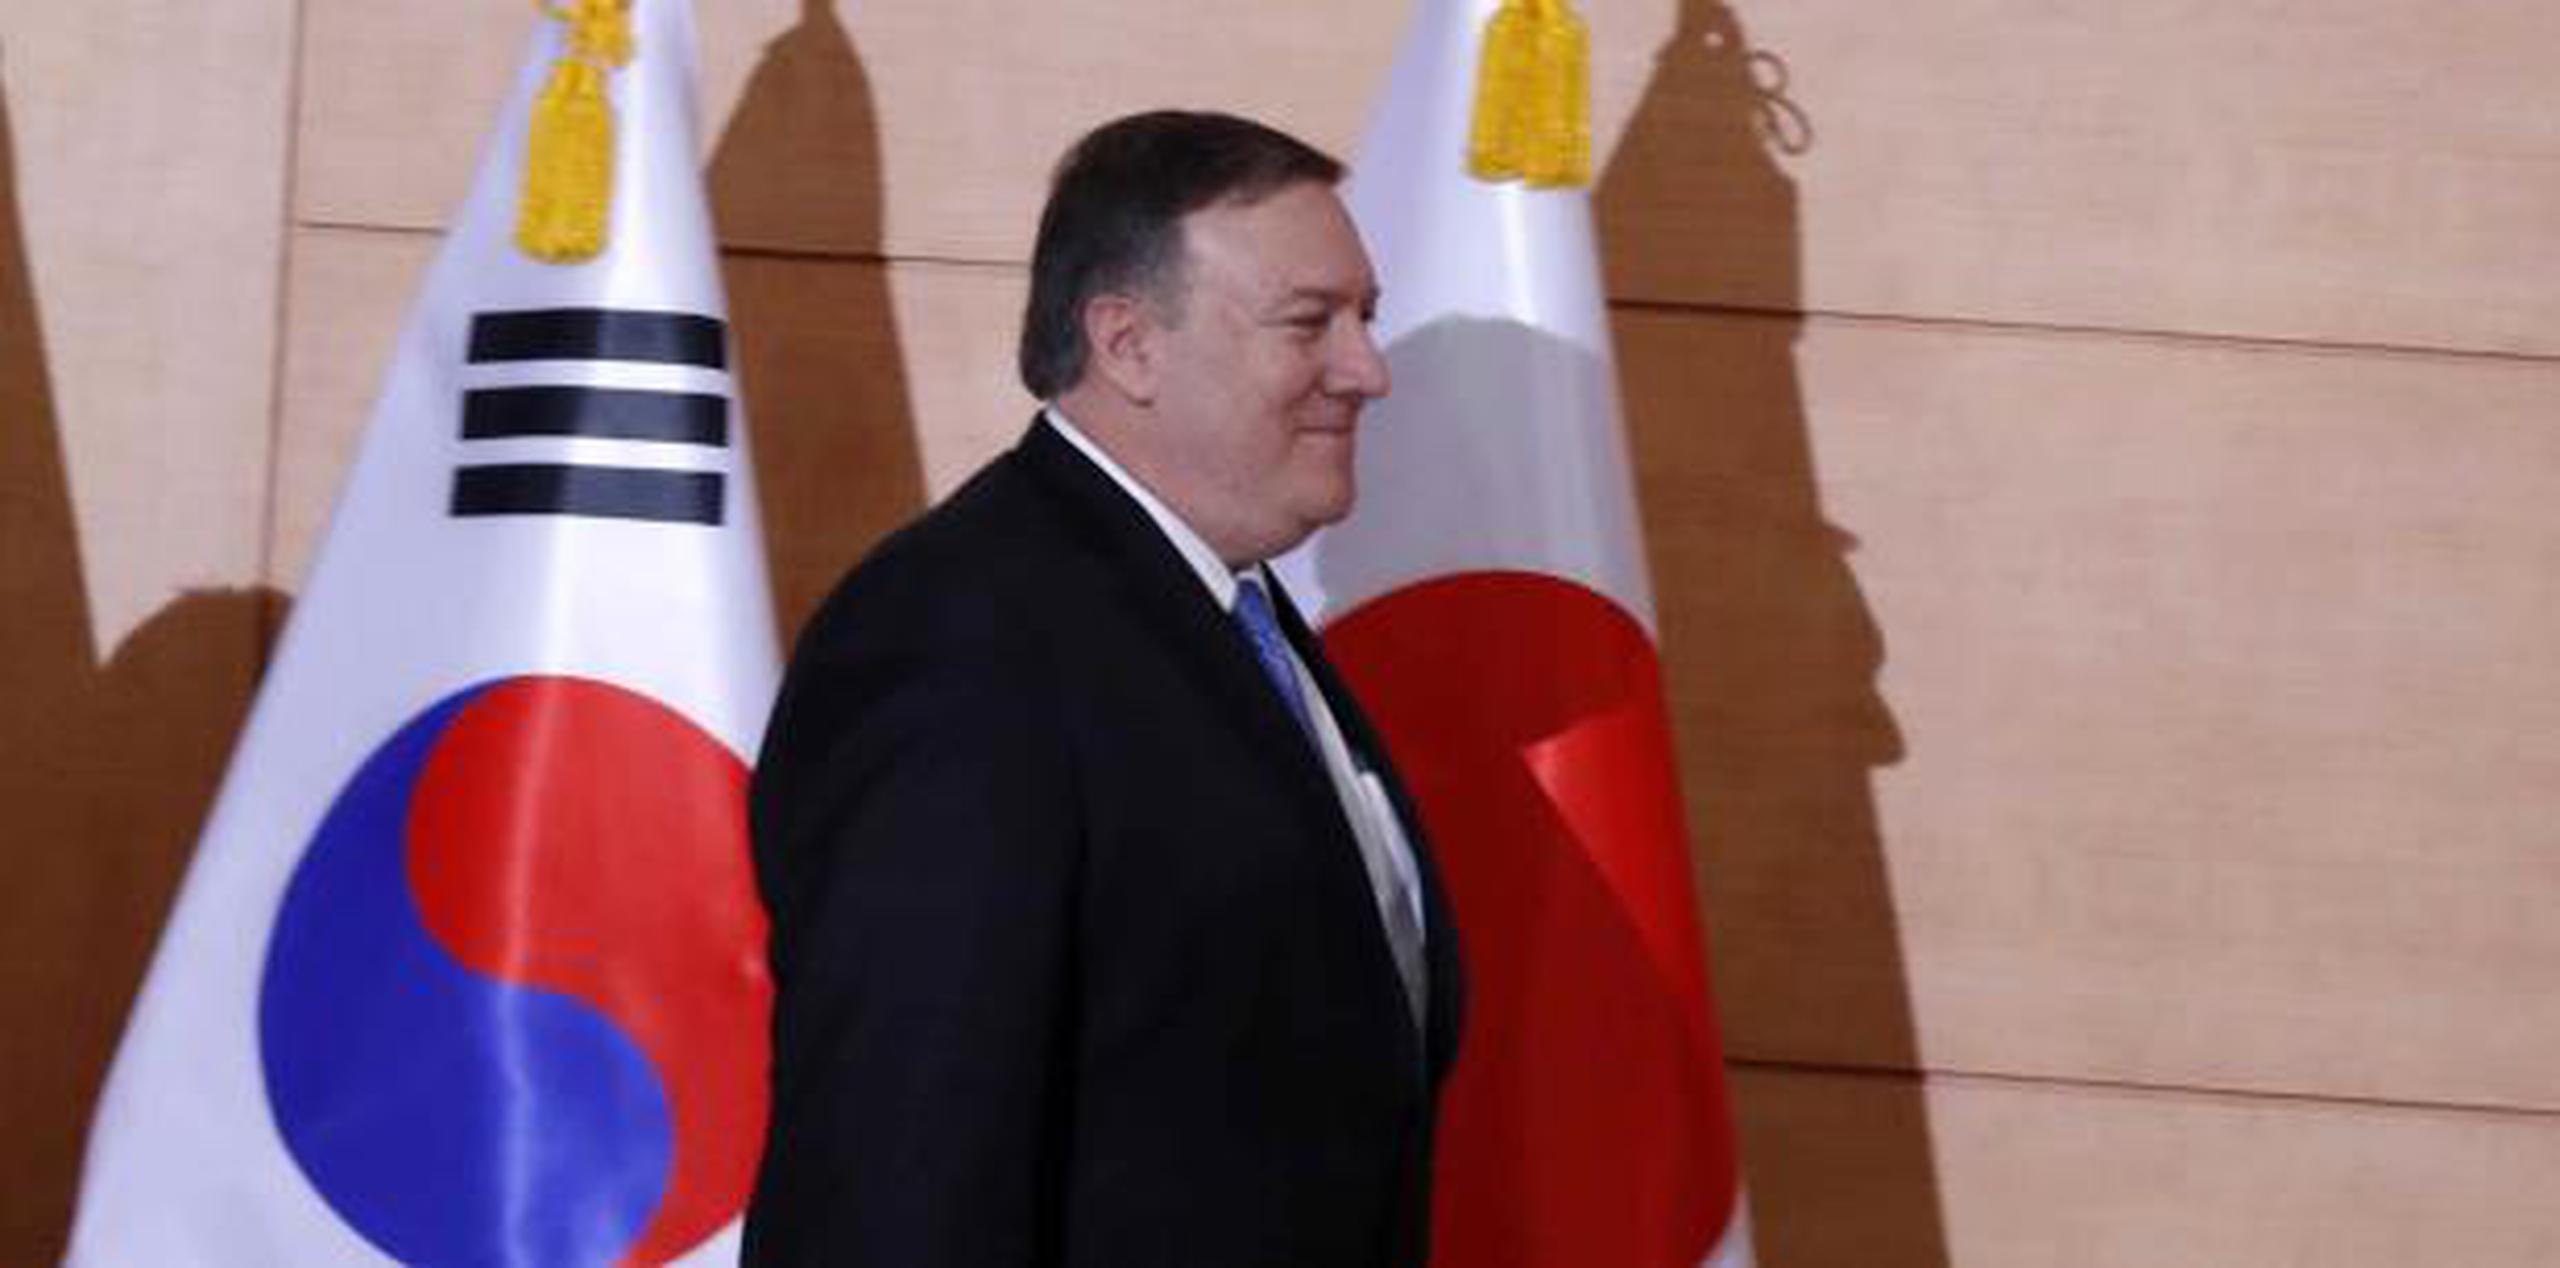 El secretario de Estado de Estados Unidos, Mike Pompeo, se reunió con diplomáticos surcoreanos y japoneses. (AP)